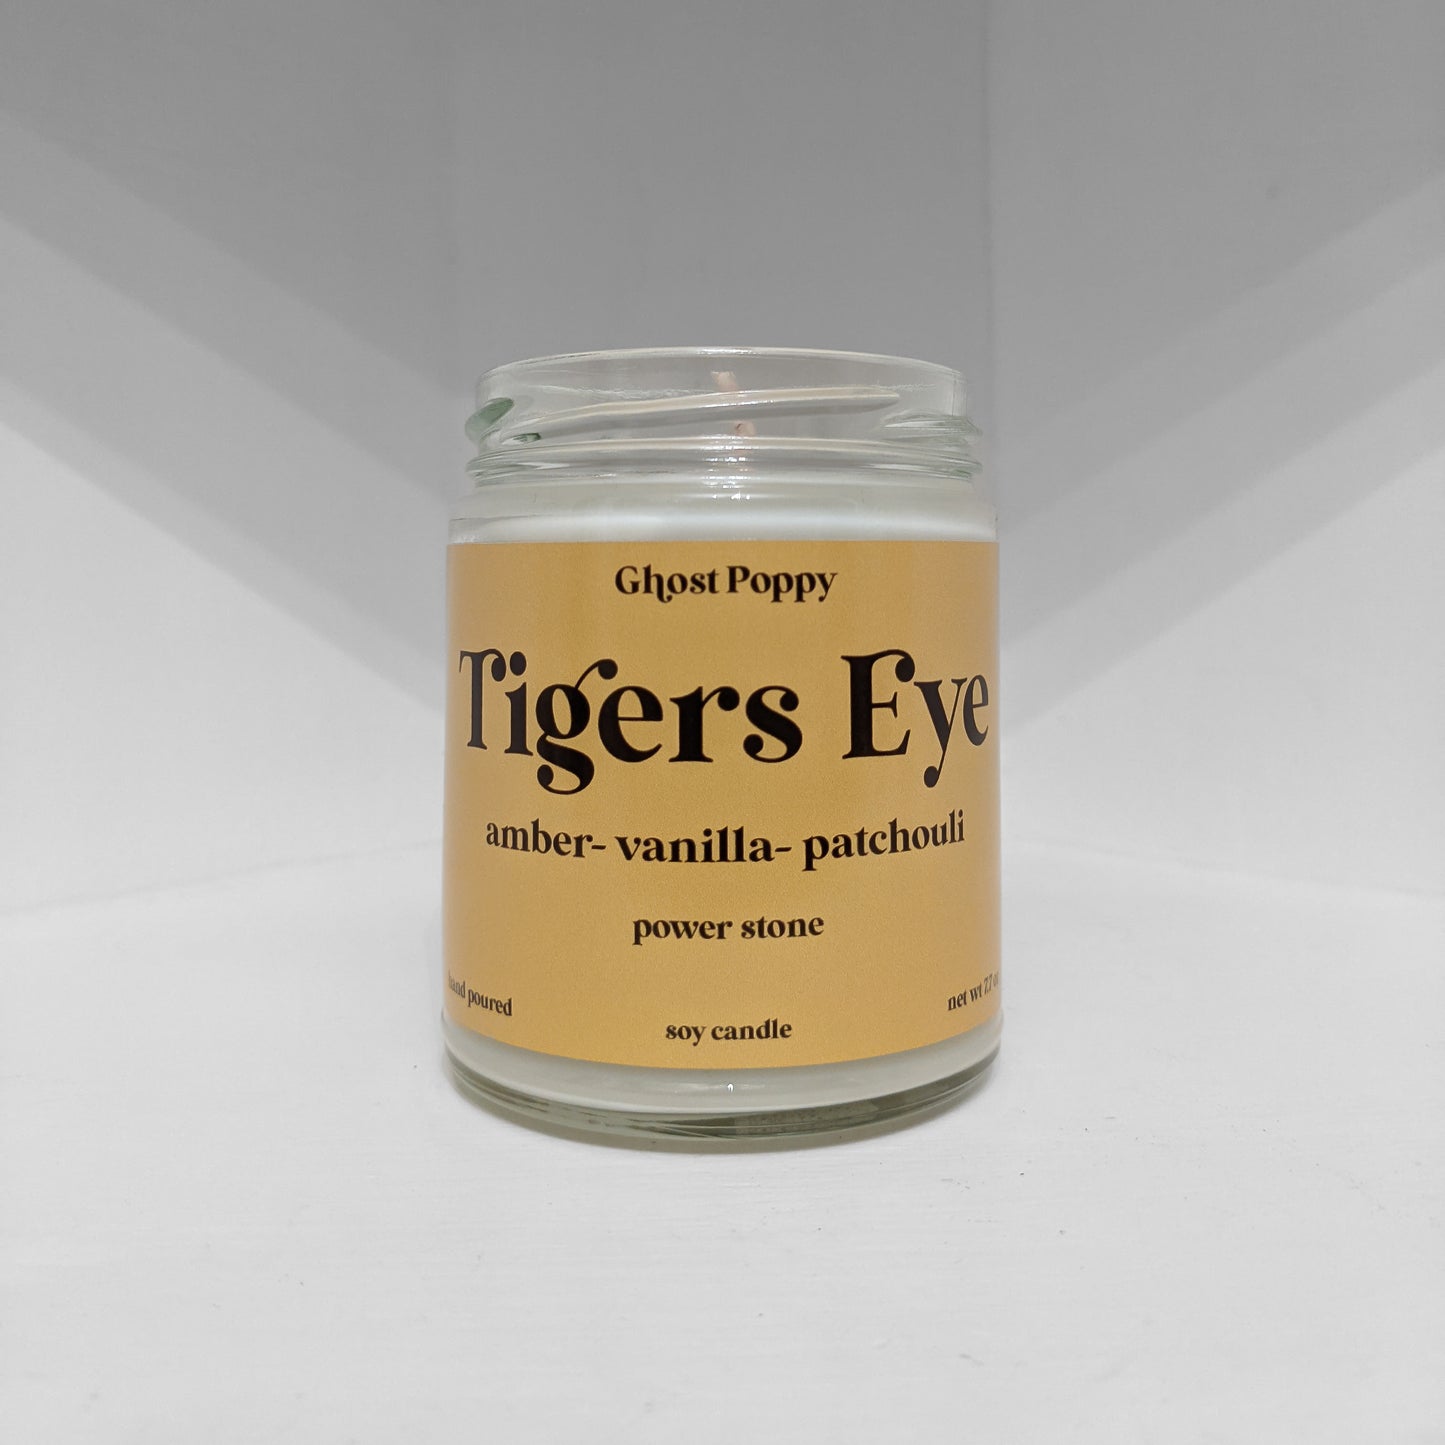 Tigers Eye Candle